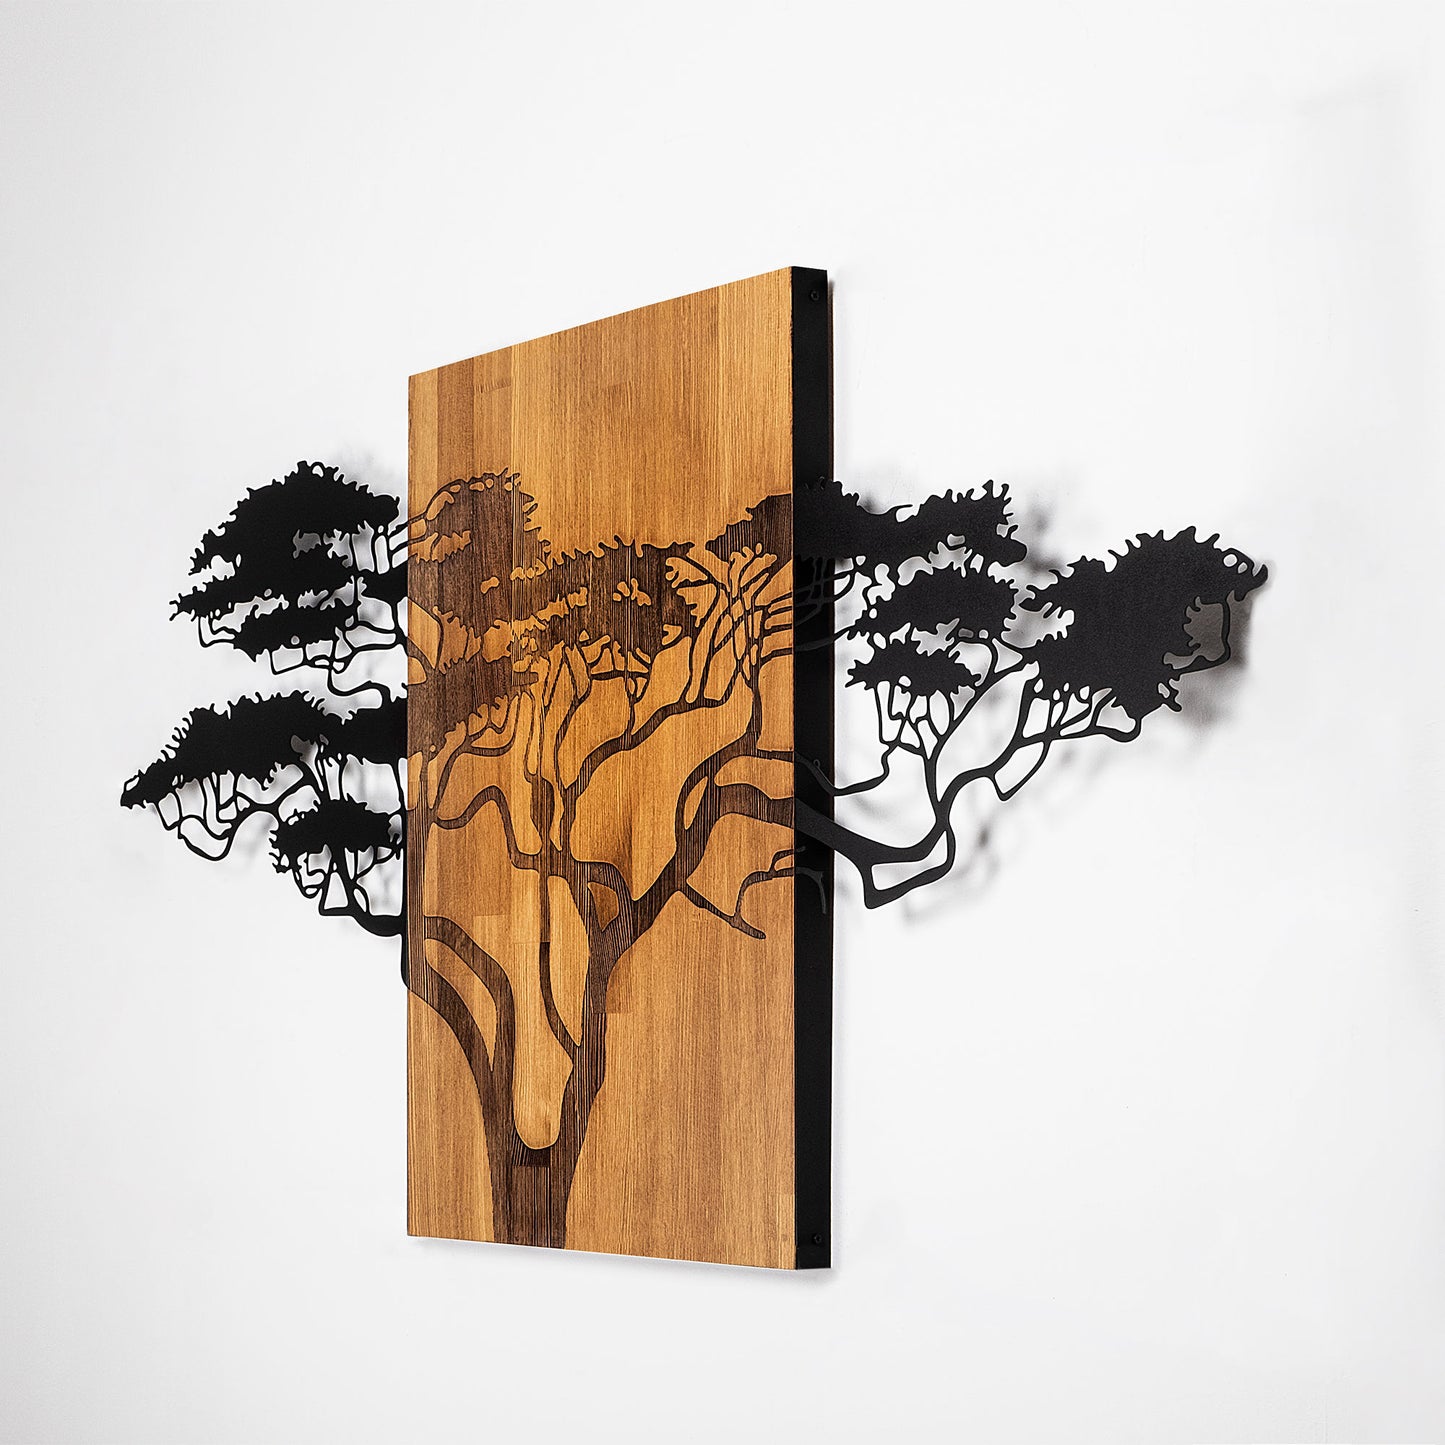 Acacia Tree - 329 - Decorative Wooden Wall Accessory